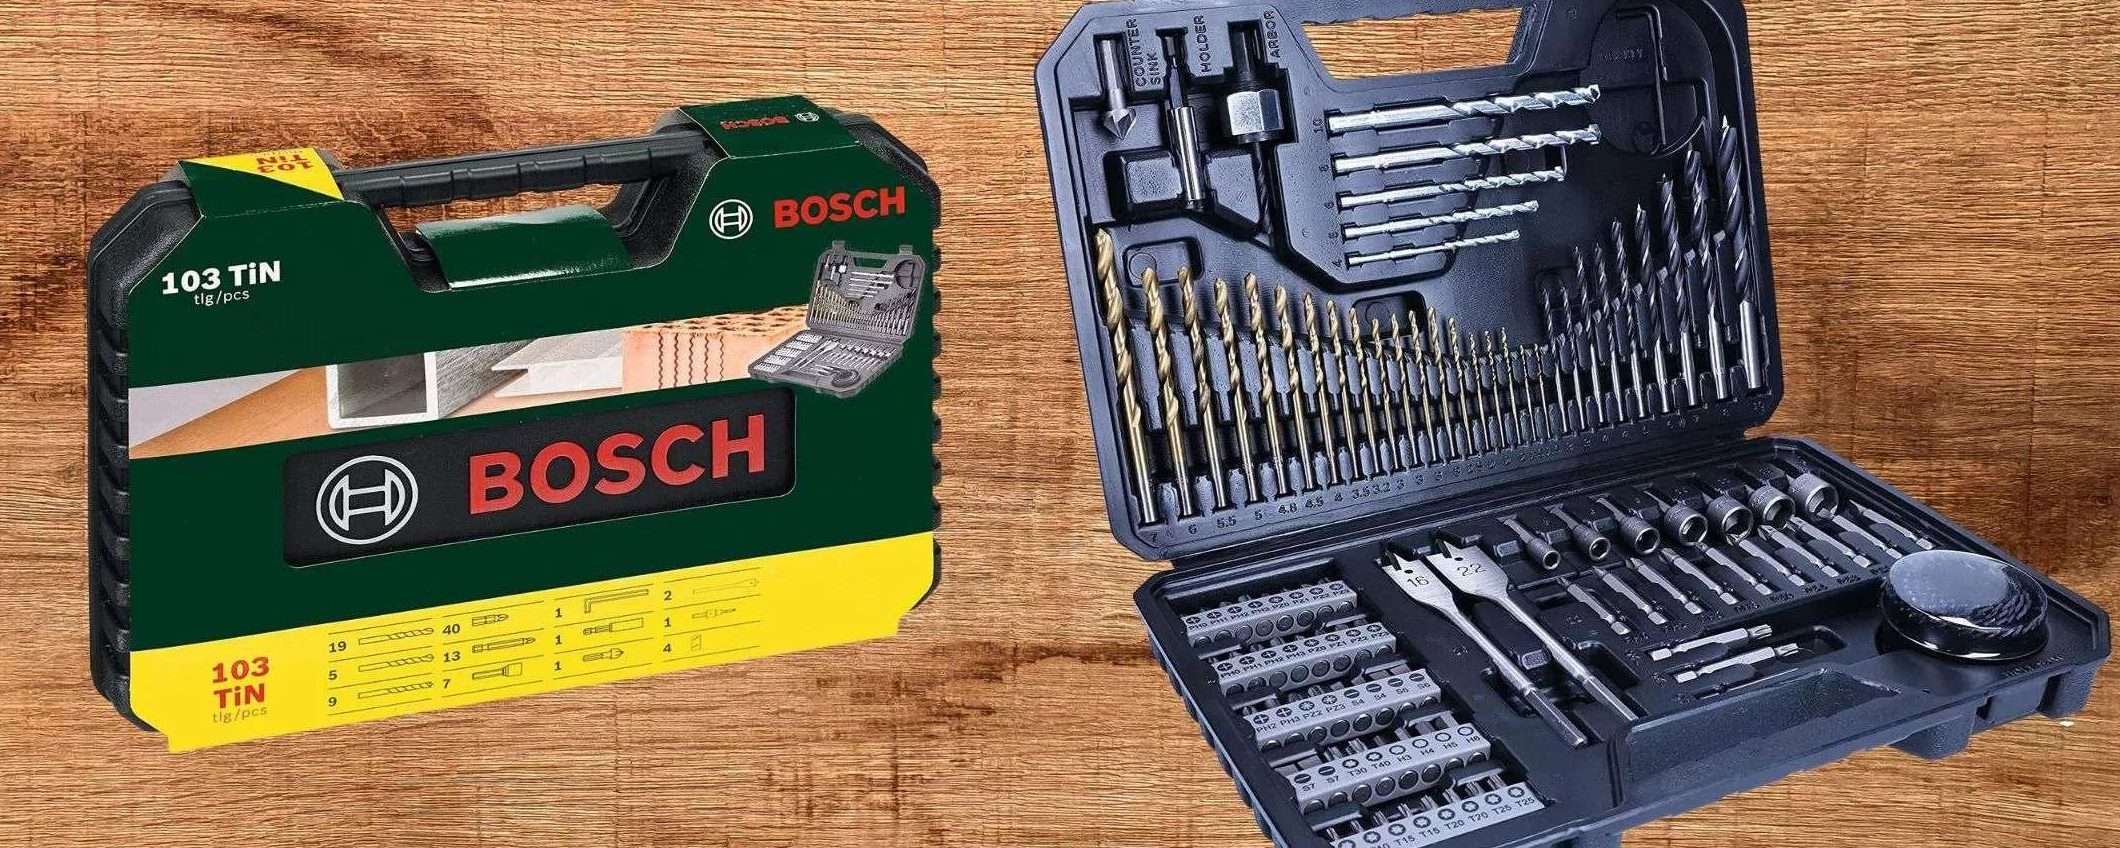 Bosch, IMPERDIBILE: gigantesco kit 103 in 1 a prezzo WOW su Amazon (24€)